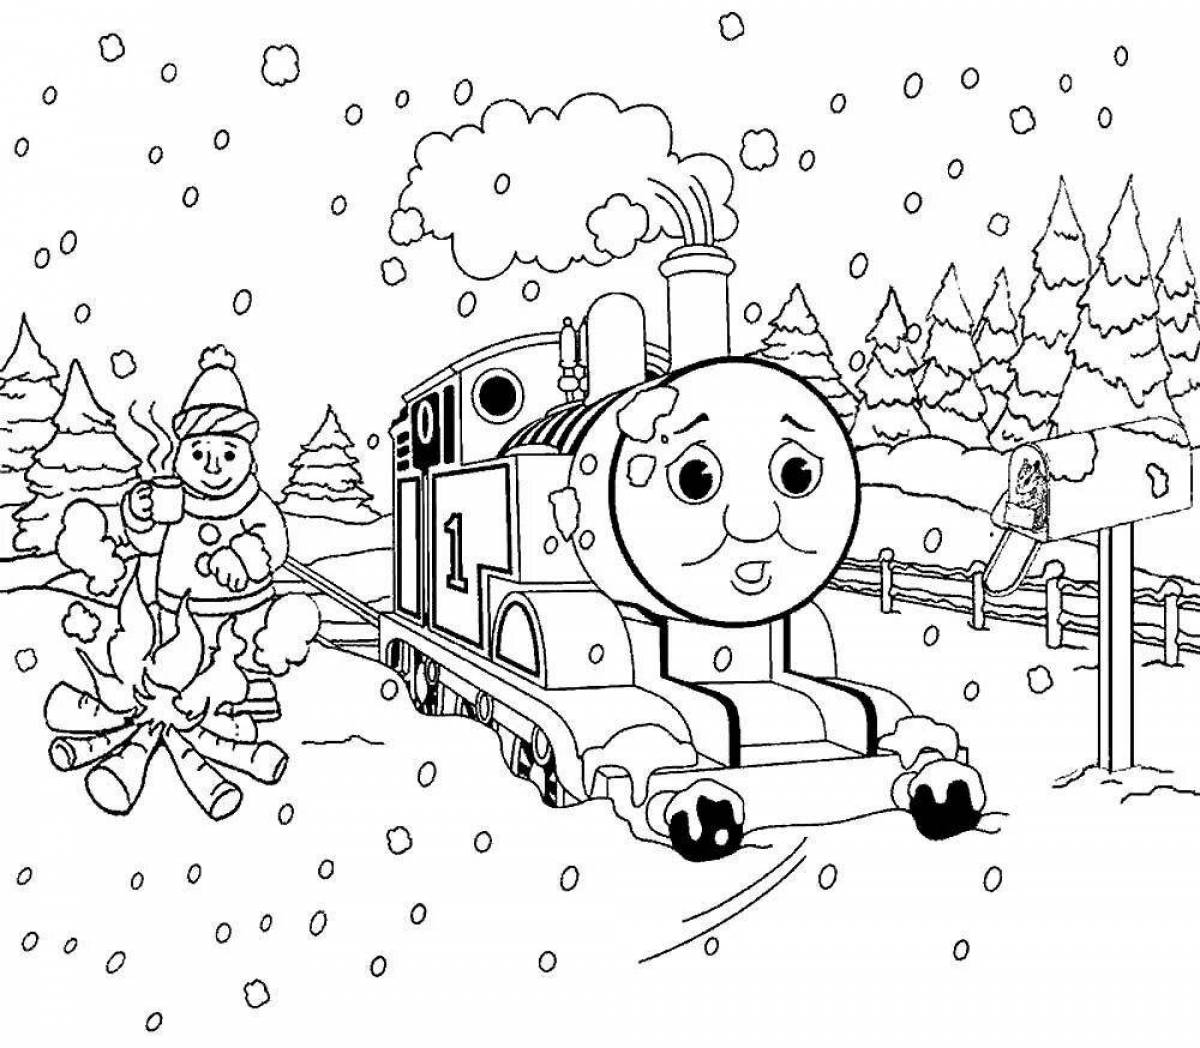 Adorable winter coloring book for boys